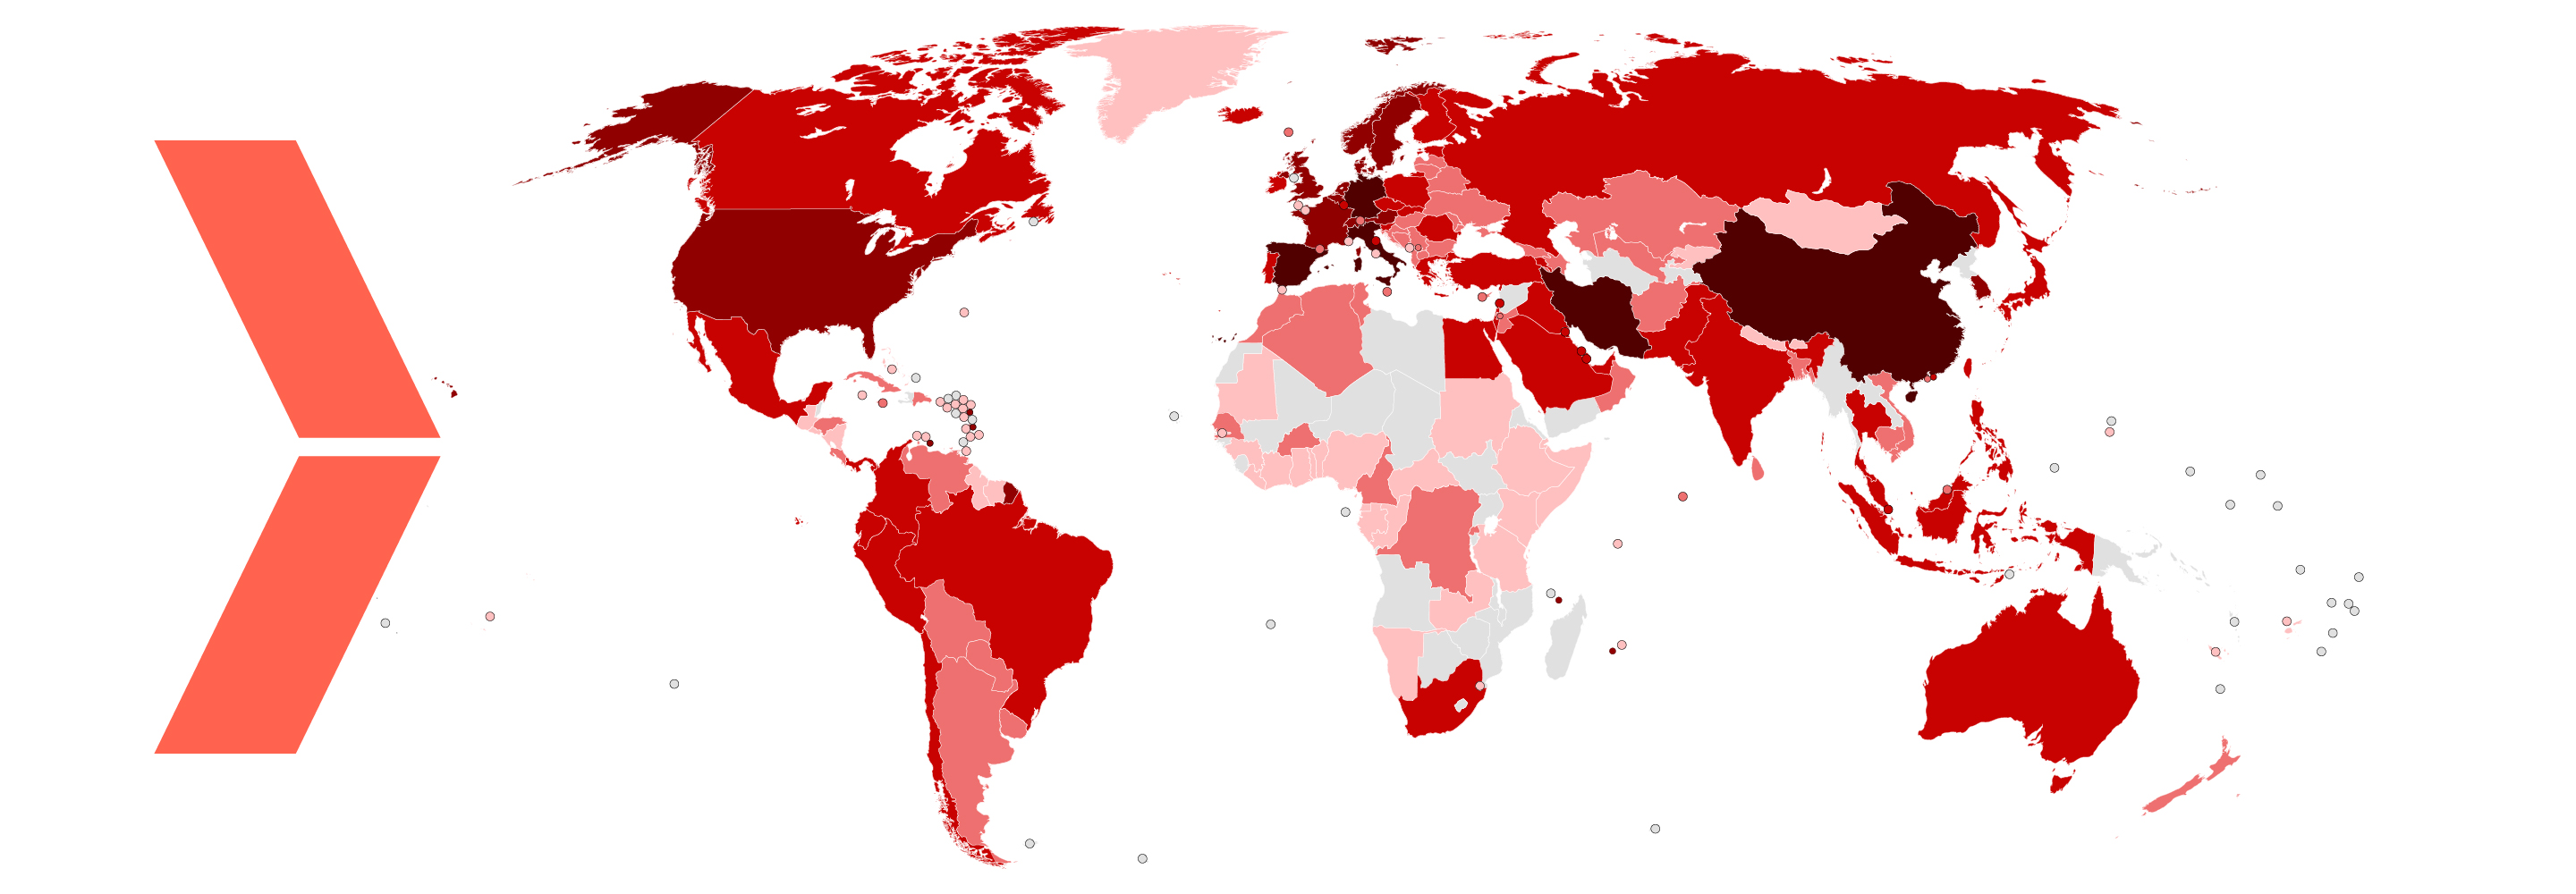 Yläosa 44+ imagen i vilka länder finns coronaviruset